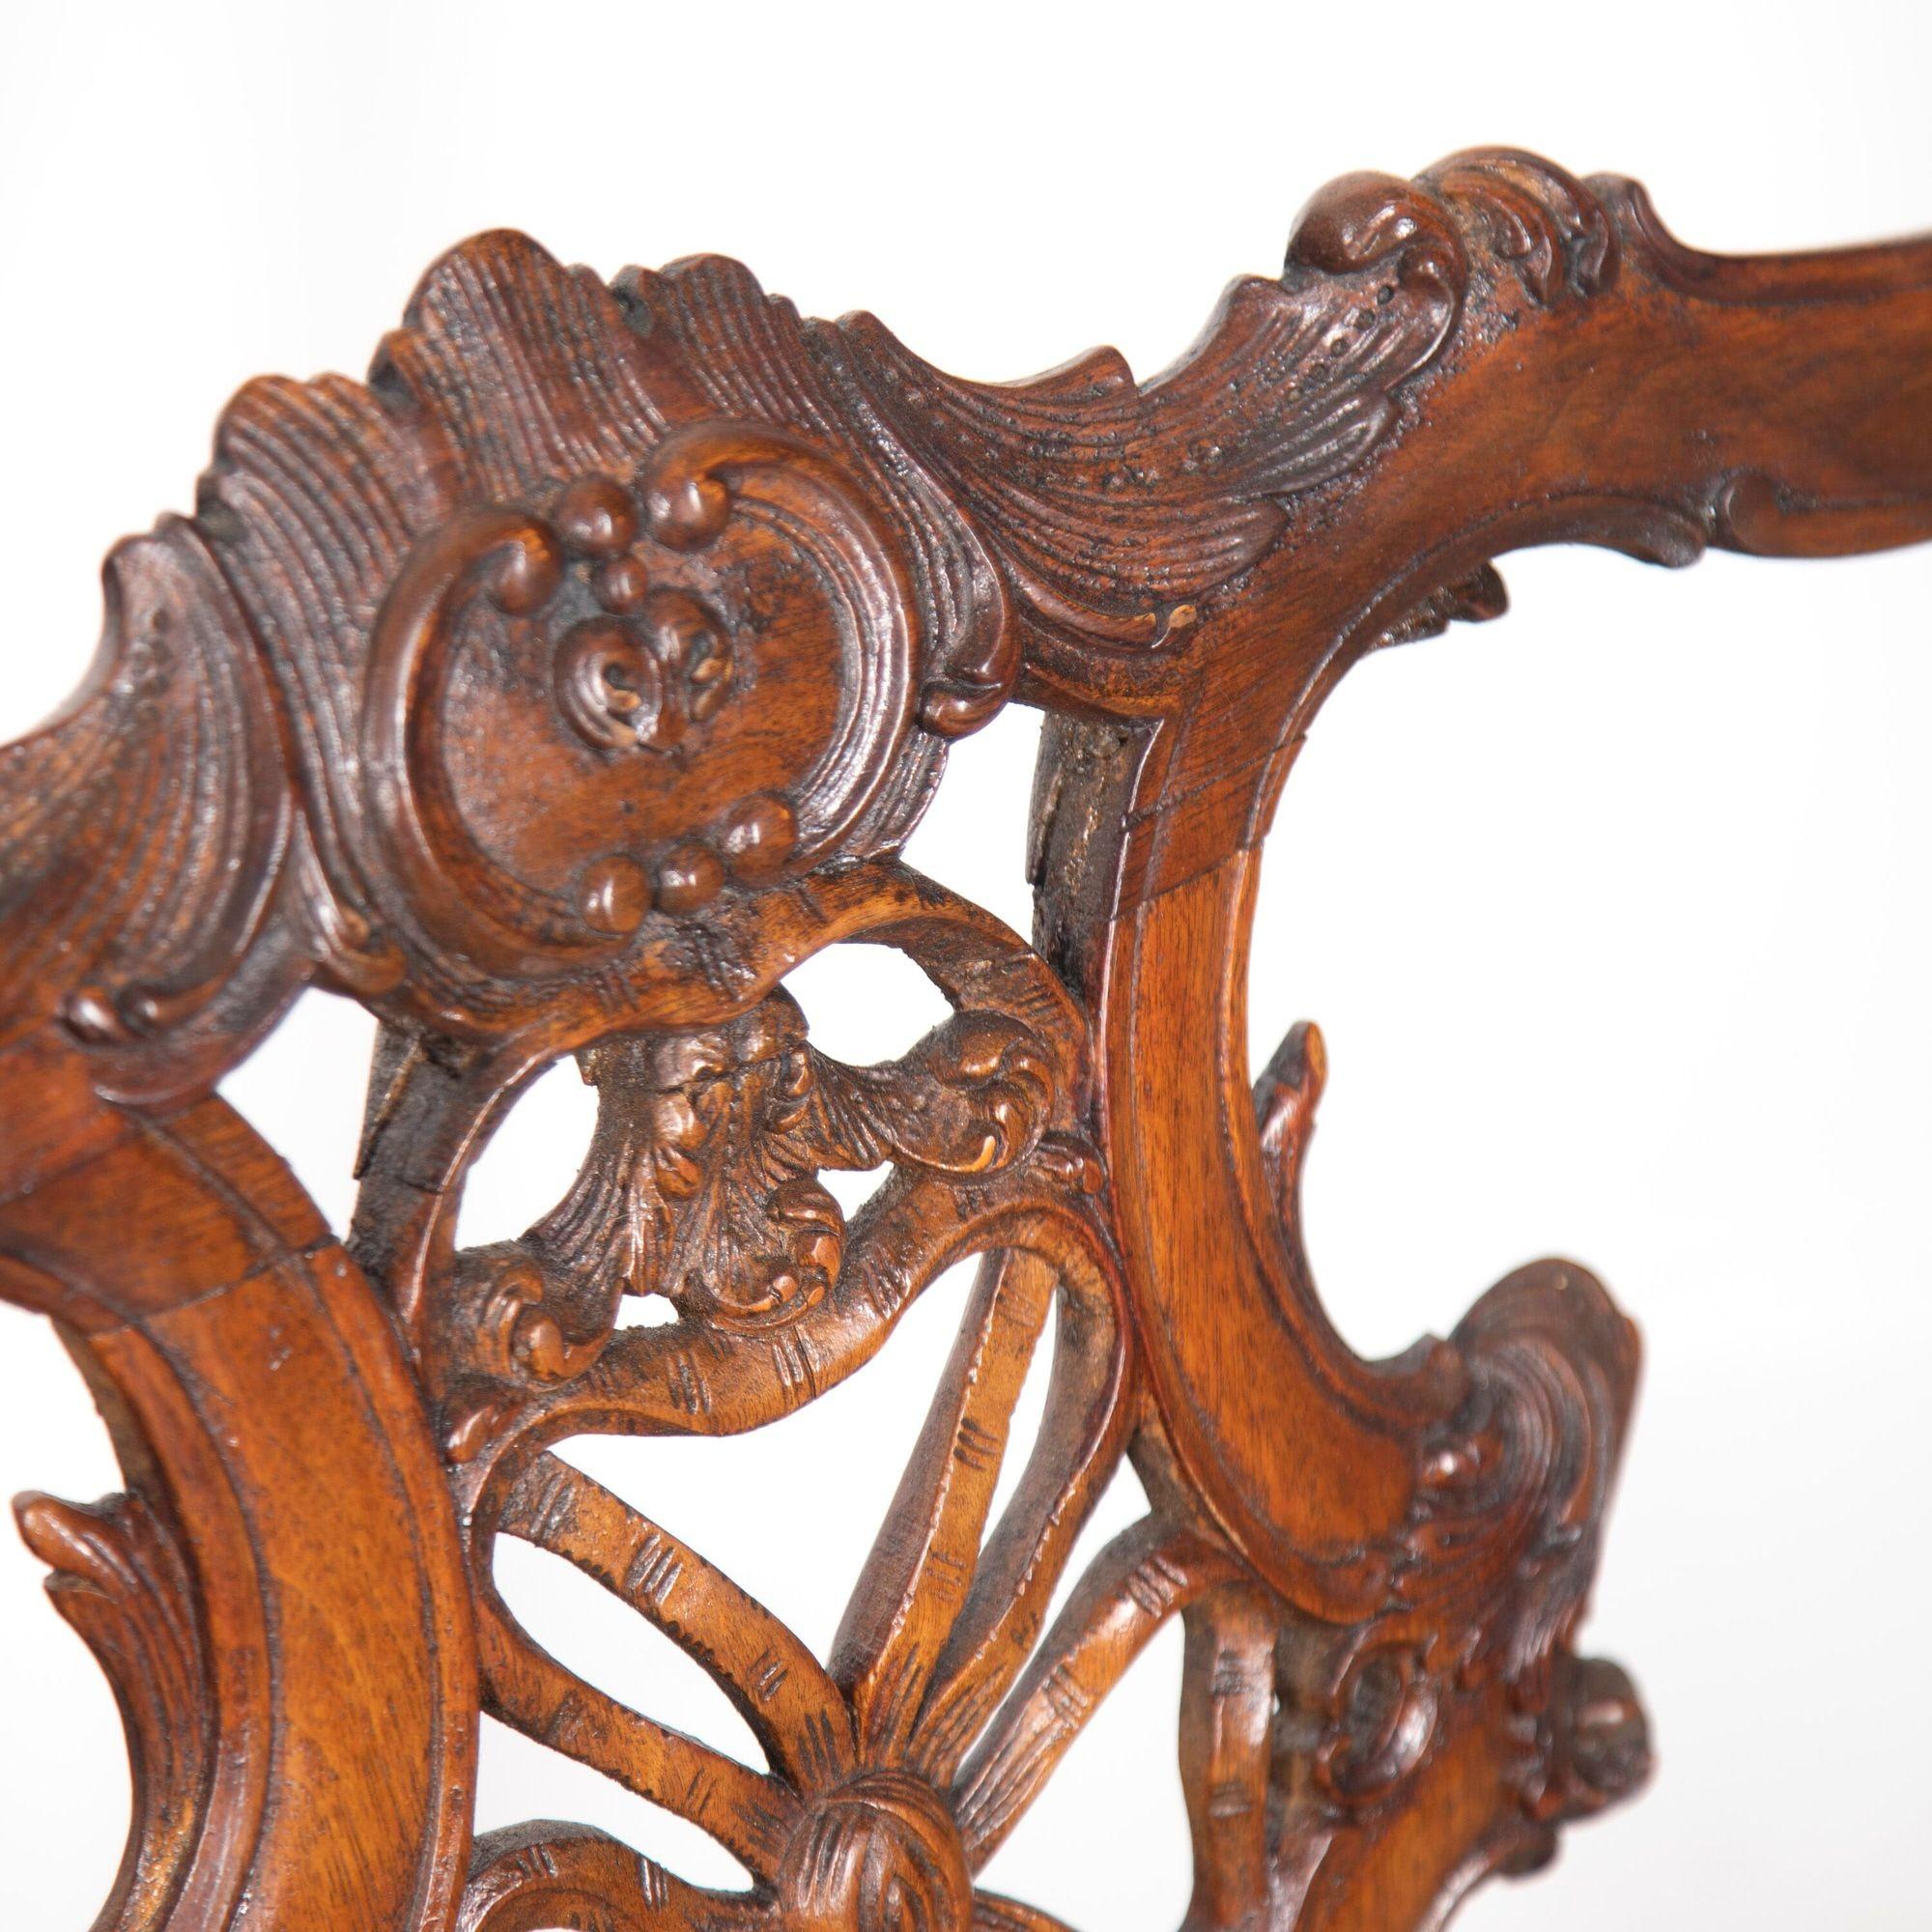 Absolut atemberaubend Nussbaum Chippendale-Stil dekorative Sofa mit zwei beeindruckende Seite Stühle.
Dieses fantastische Set wurde möglicherweise in Südamerika in den 1800er Jahren von einem sehr guten Möbelschreiner und Holzschnitzer hergestellt,